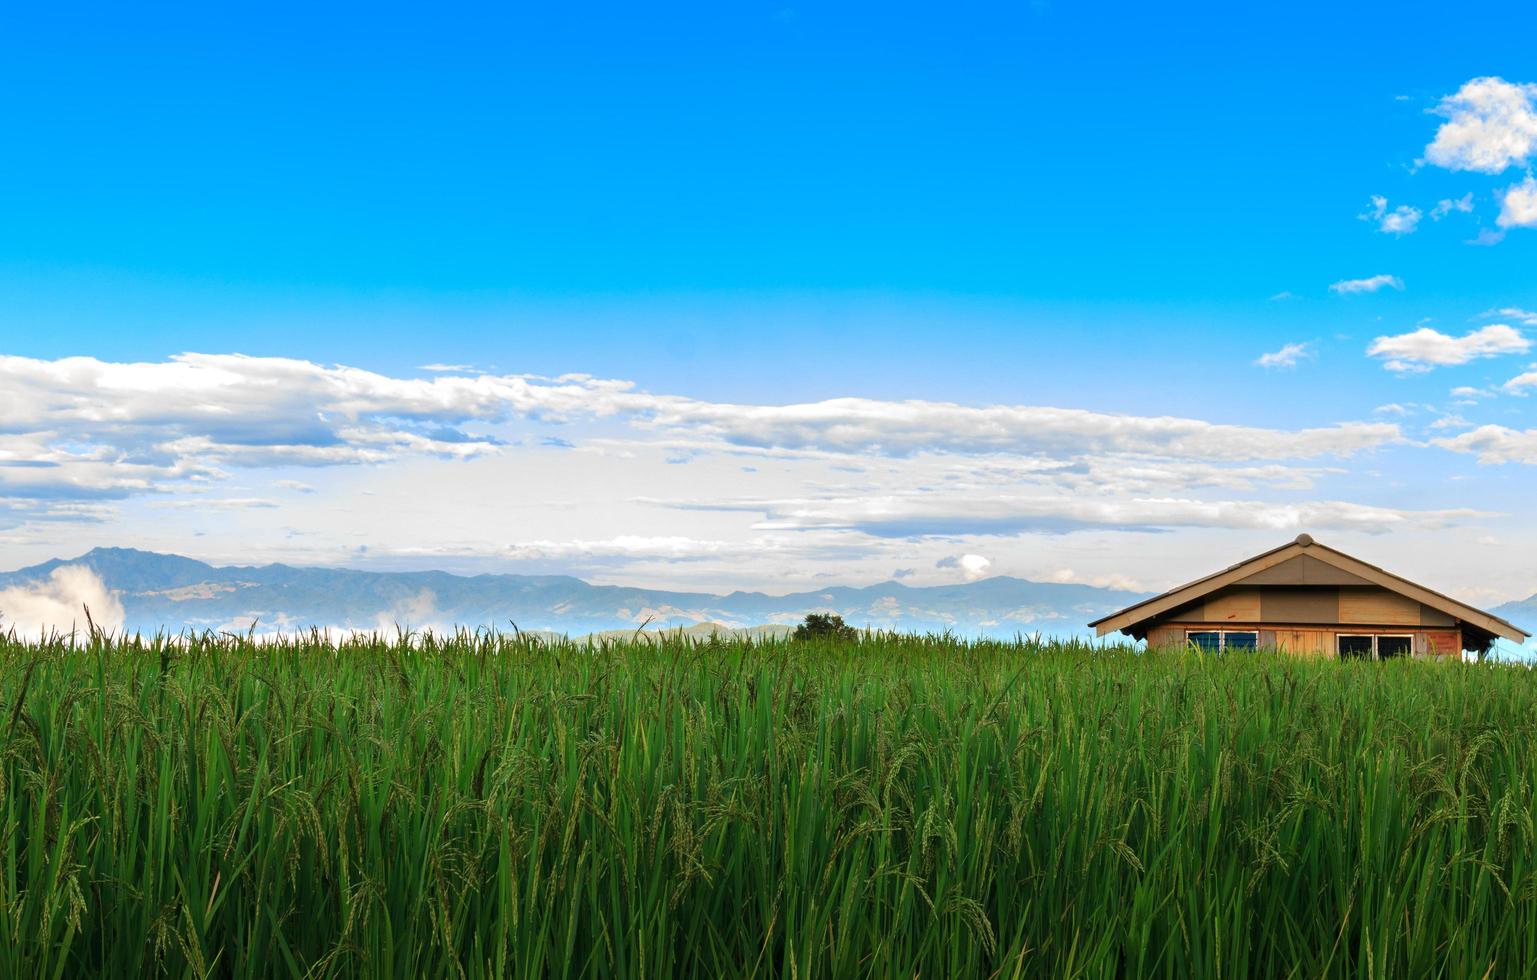 pequenas casas, campos de arroz e bela natureza no vale. imagem de fundo da serenidade foto